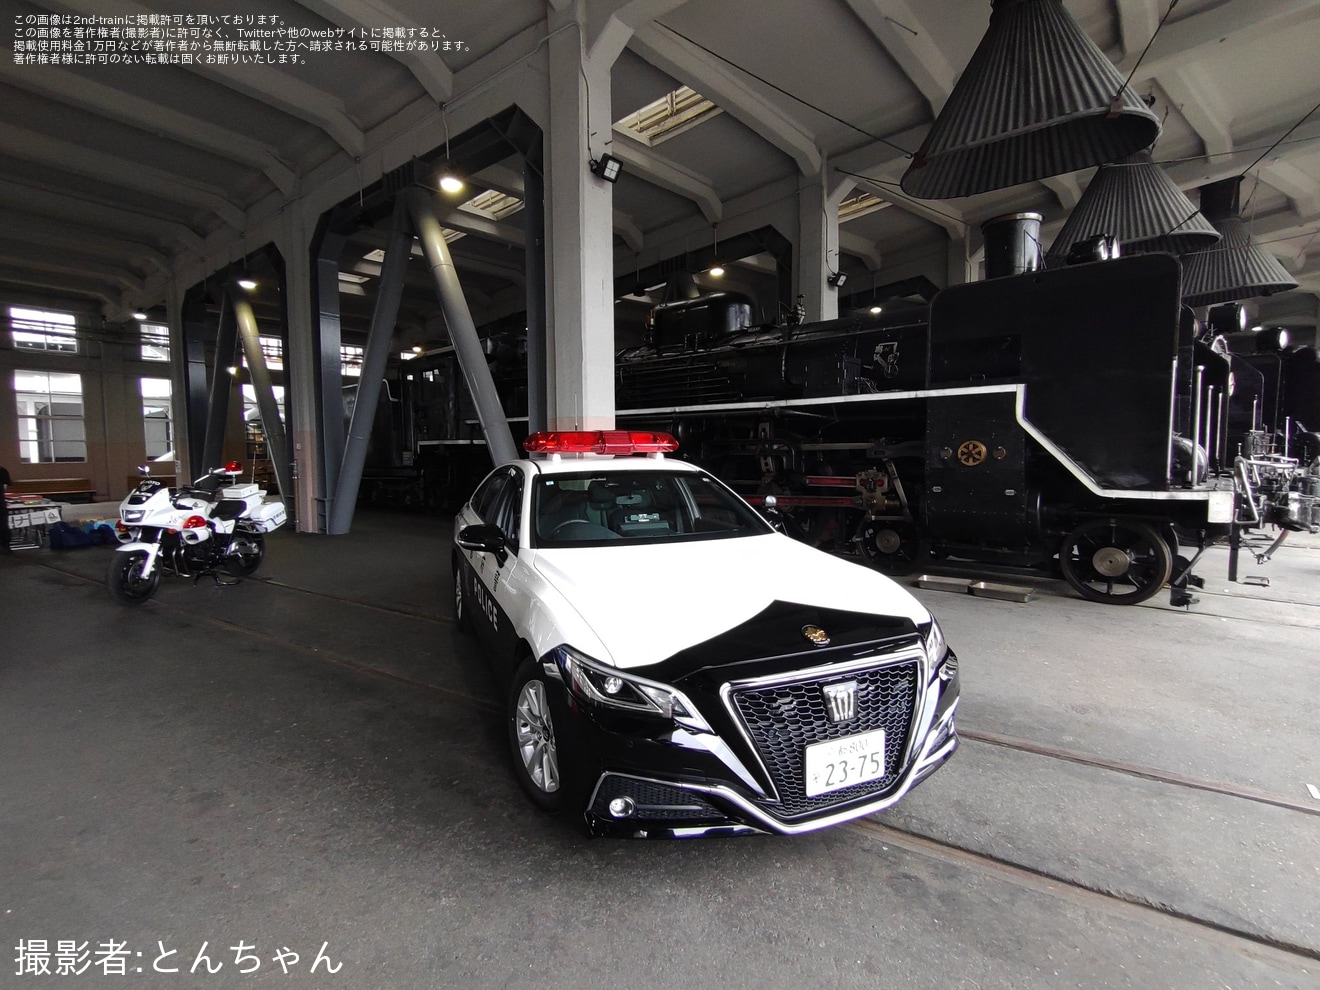 【JR西】京都鉄道博物館 SLスチーム号「鉄道警察隊イベント」ヘッドマークを取り付けの拡大写真